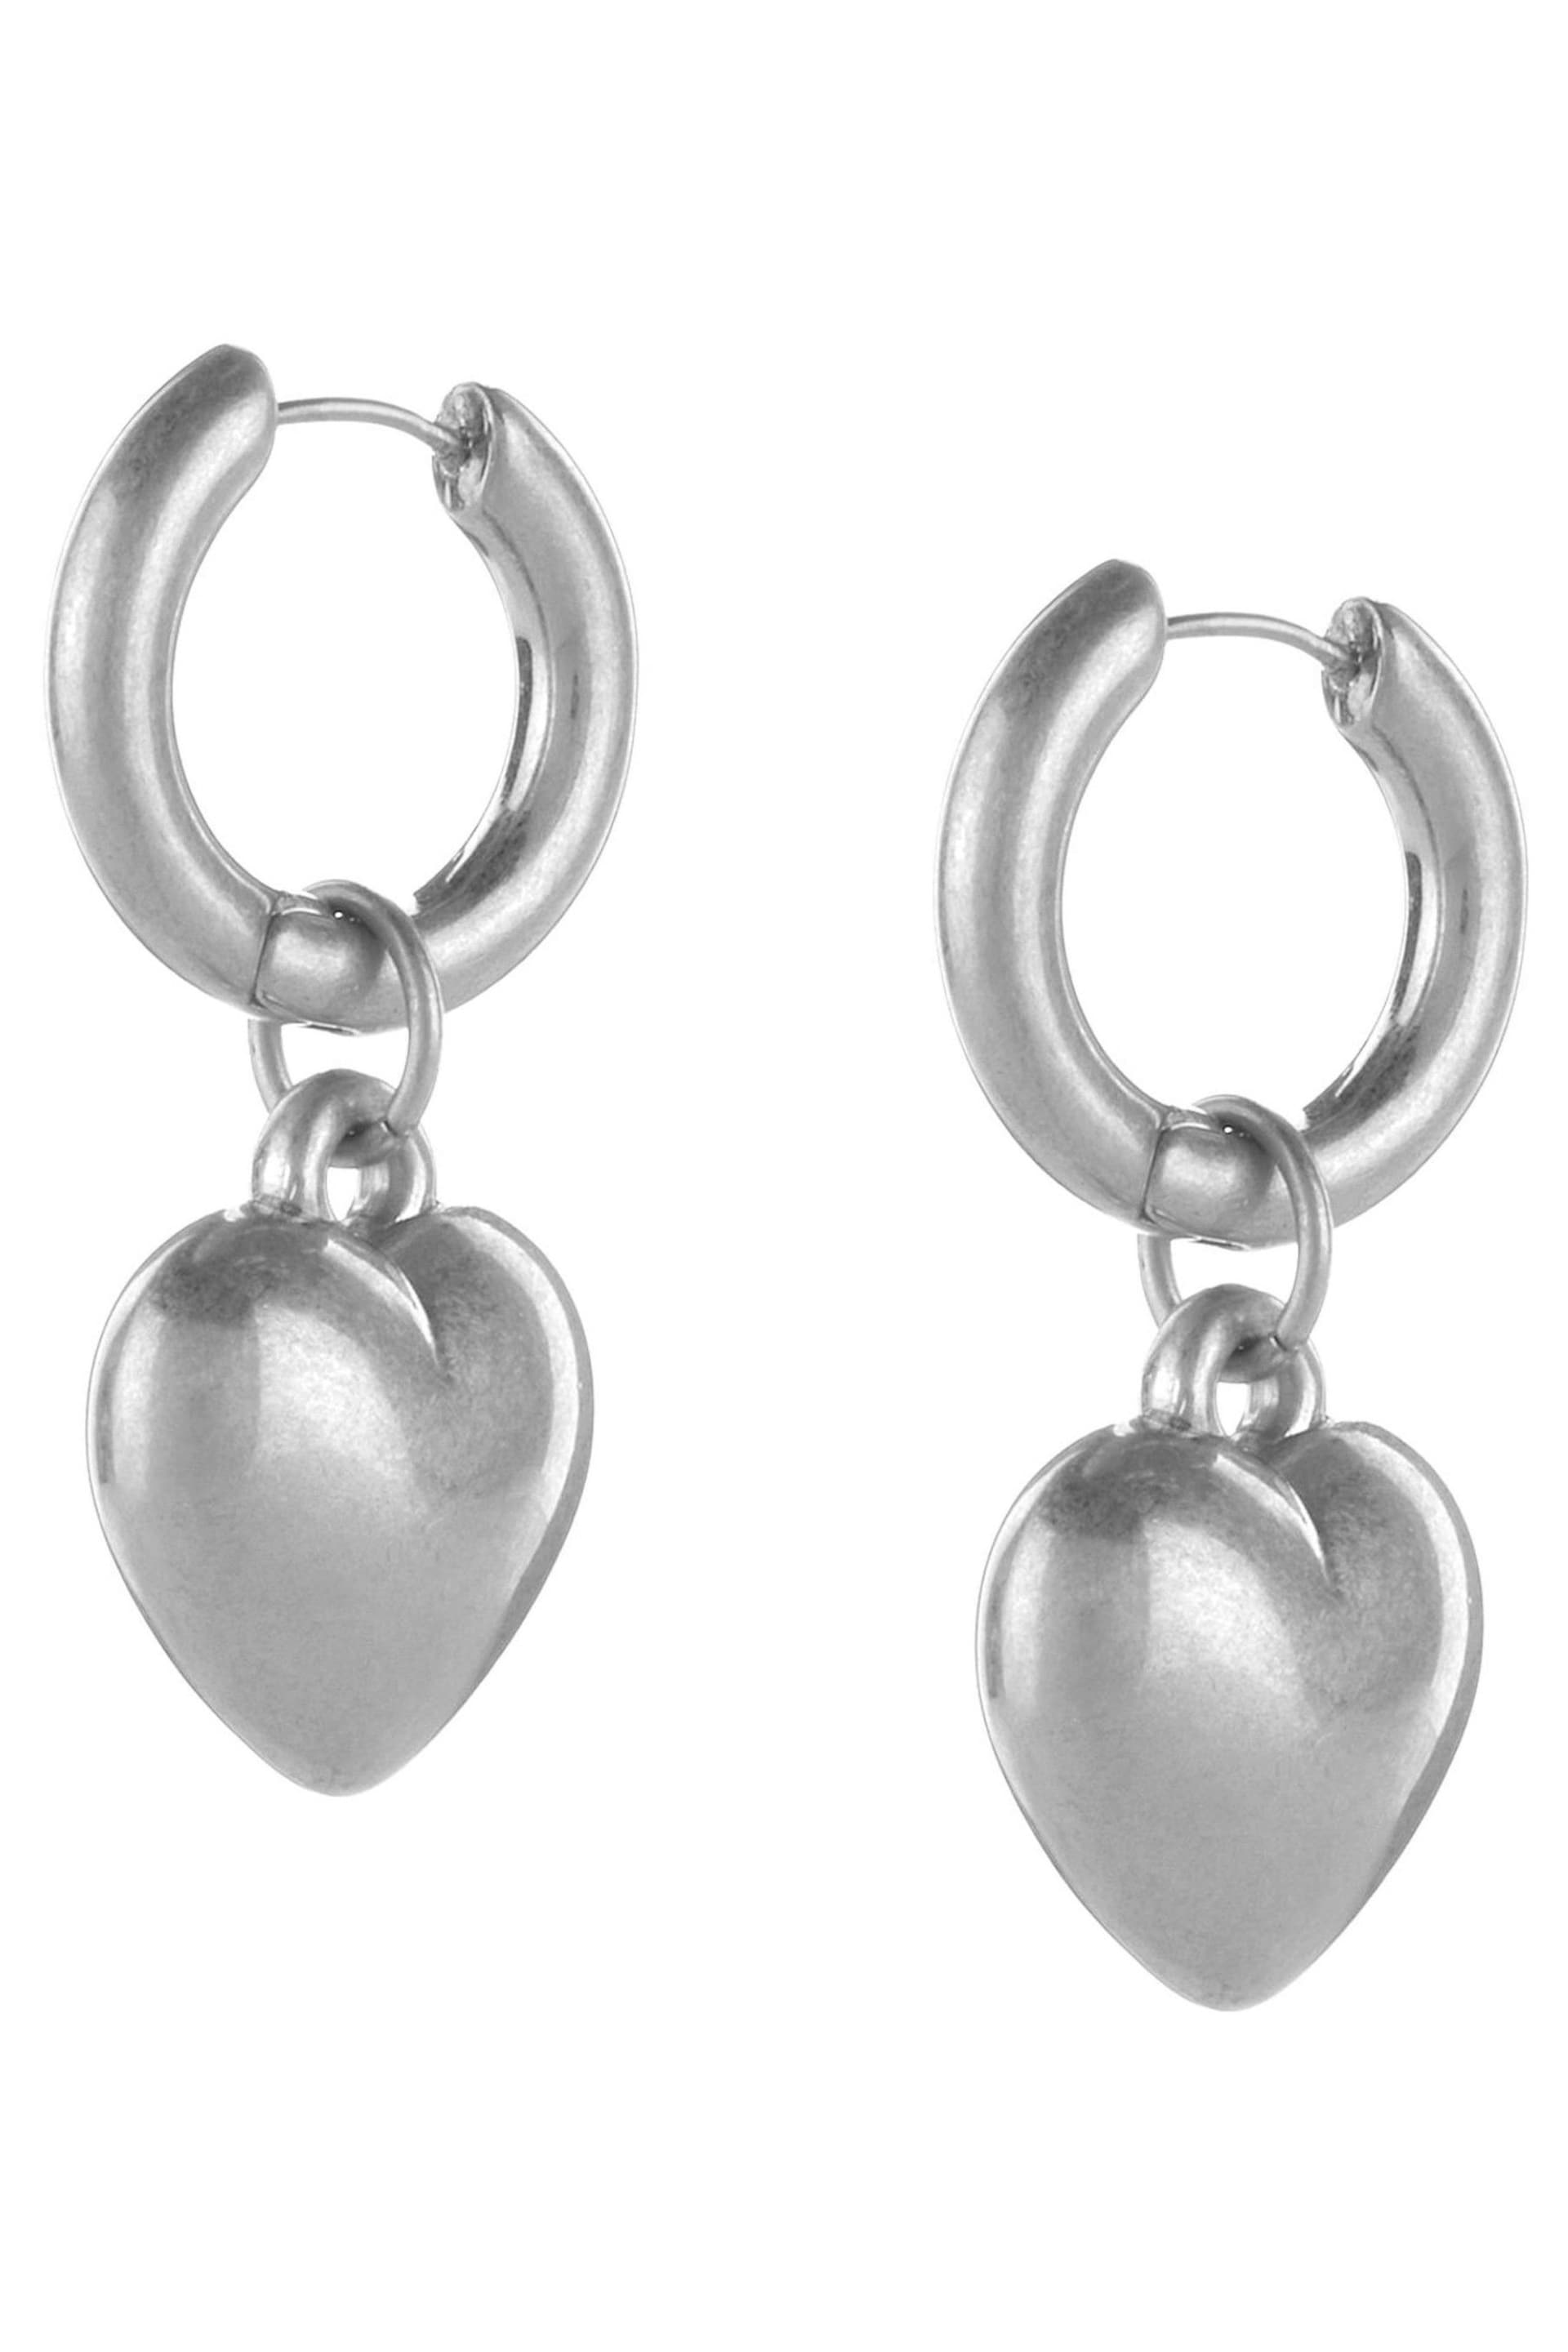 Mint Velvet Silver Heart Drop Earrings - Image 3 of 4